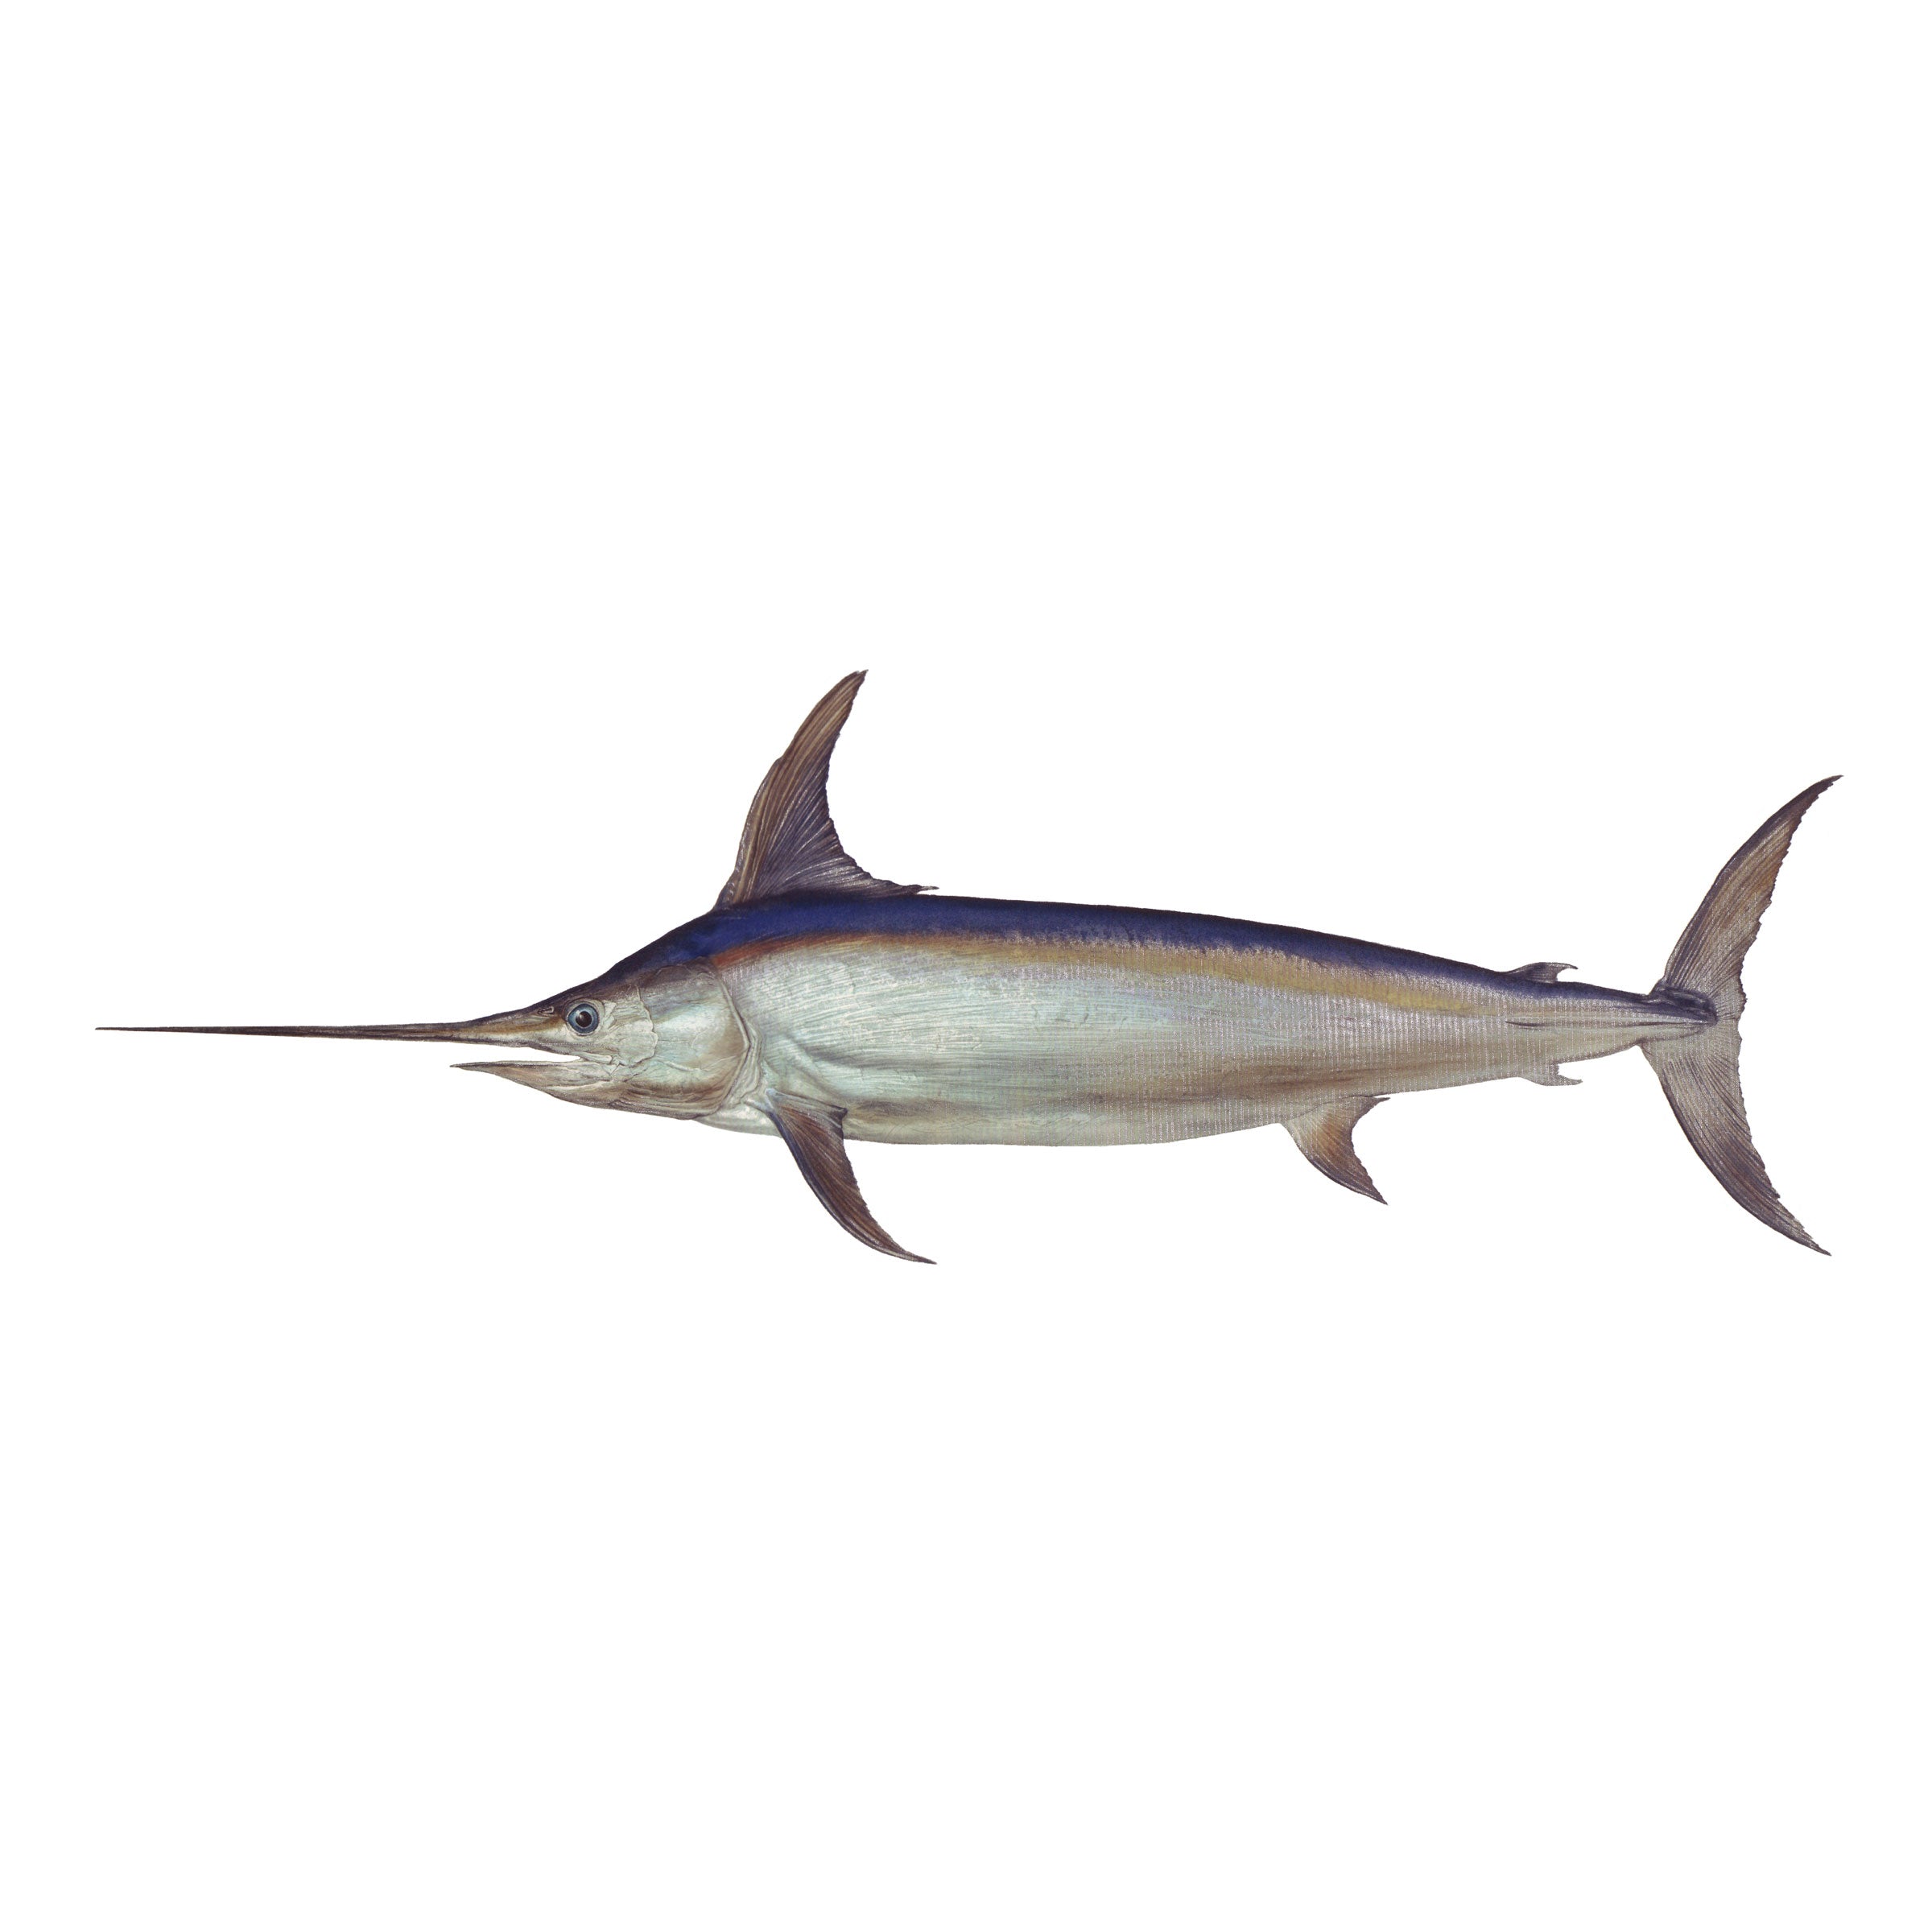 #species_swordfish